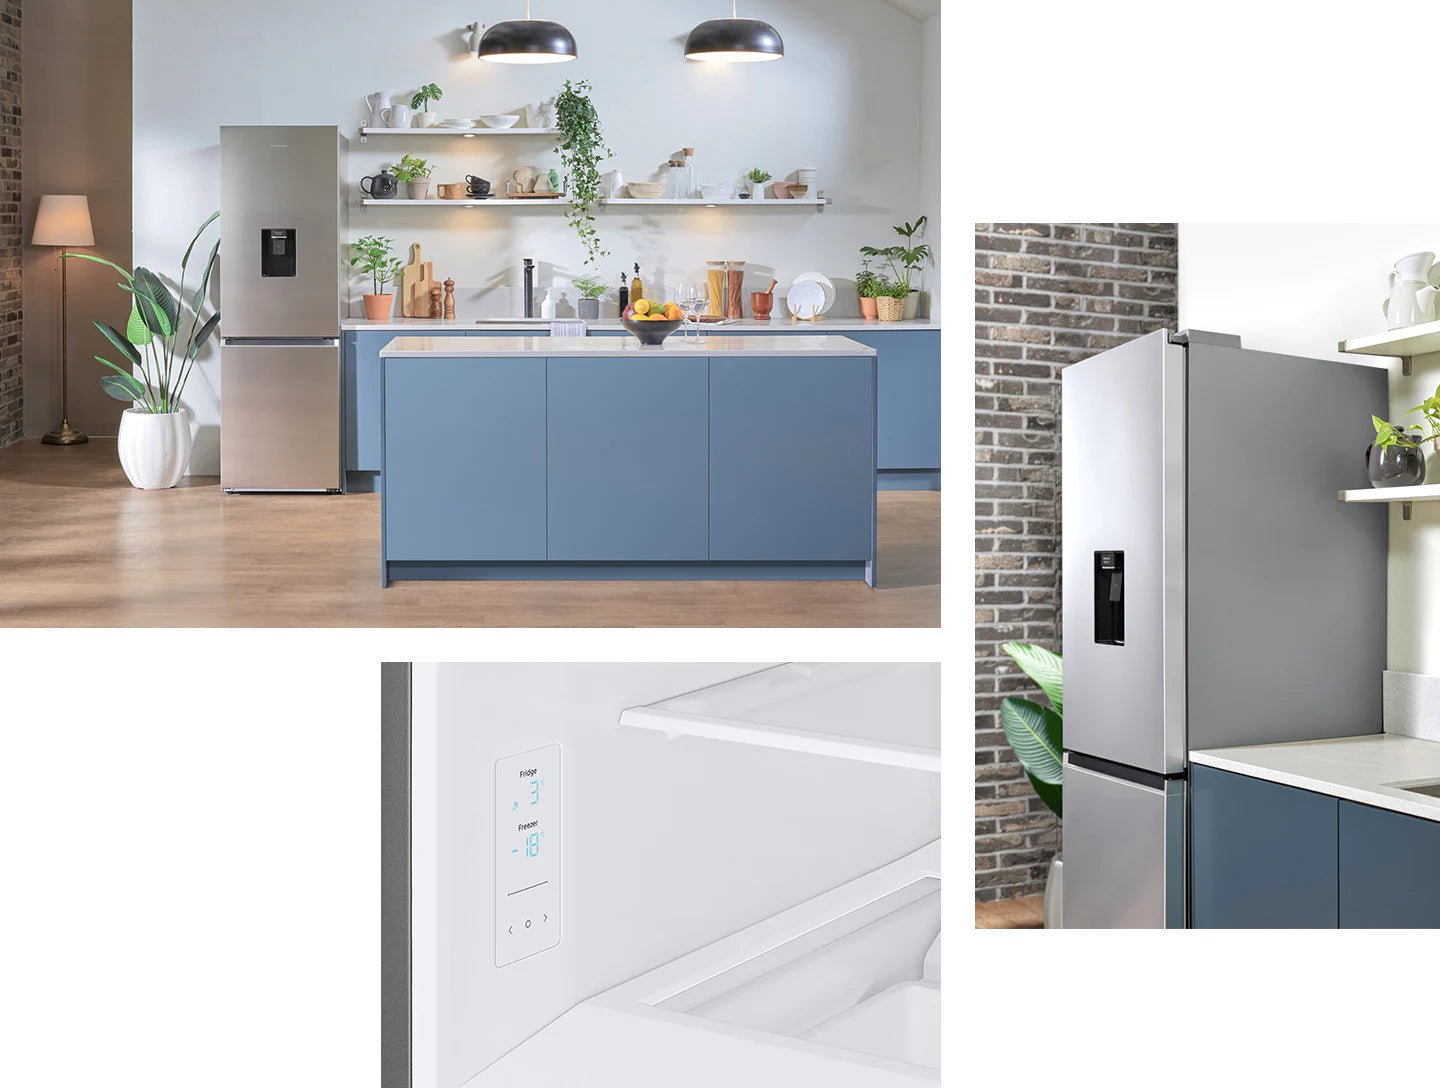 Samsung Bottom-Mount Freezer Refrigerator, RB34T630ESA/LV ثلاجة الفريزر السفلي، سعة 331 لتر - #موغامبو ستور#